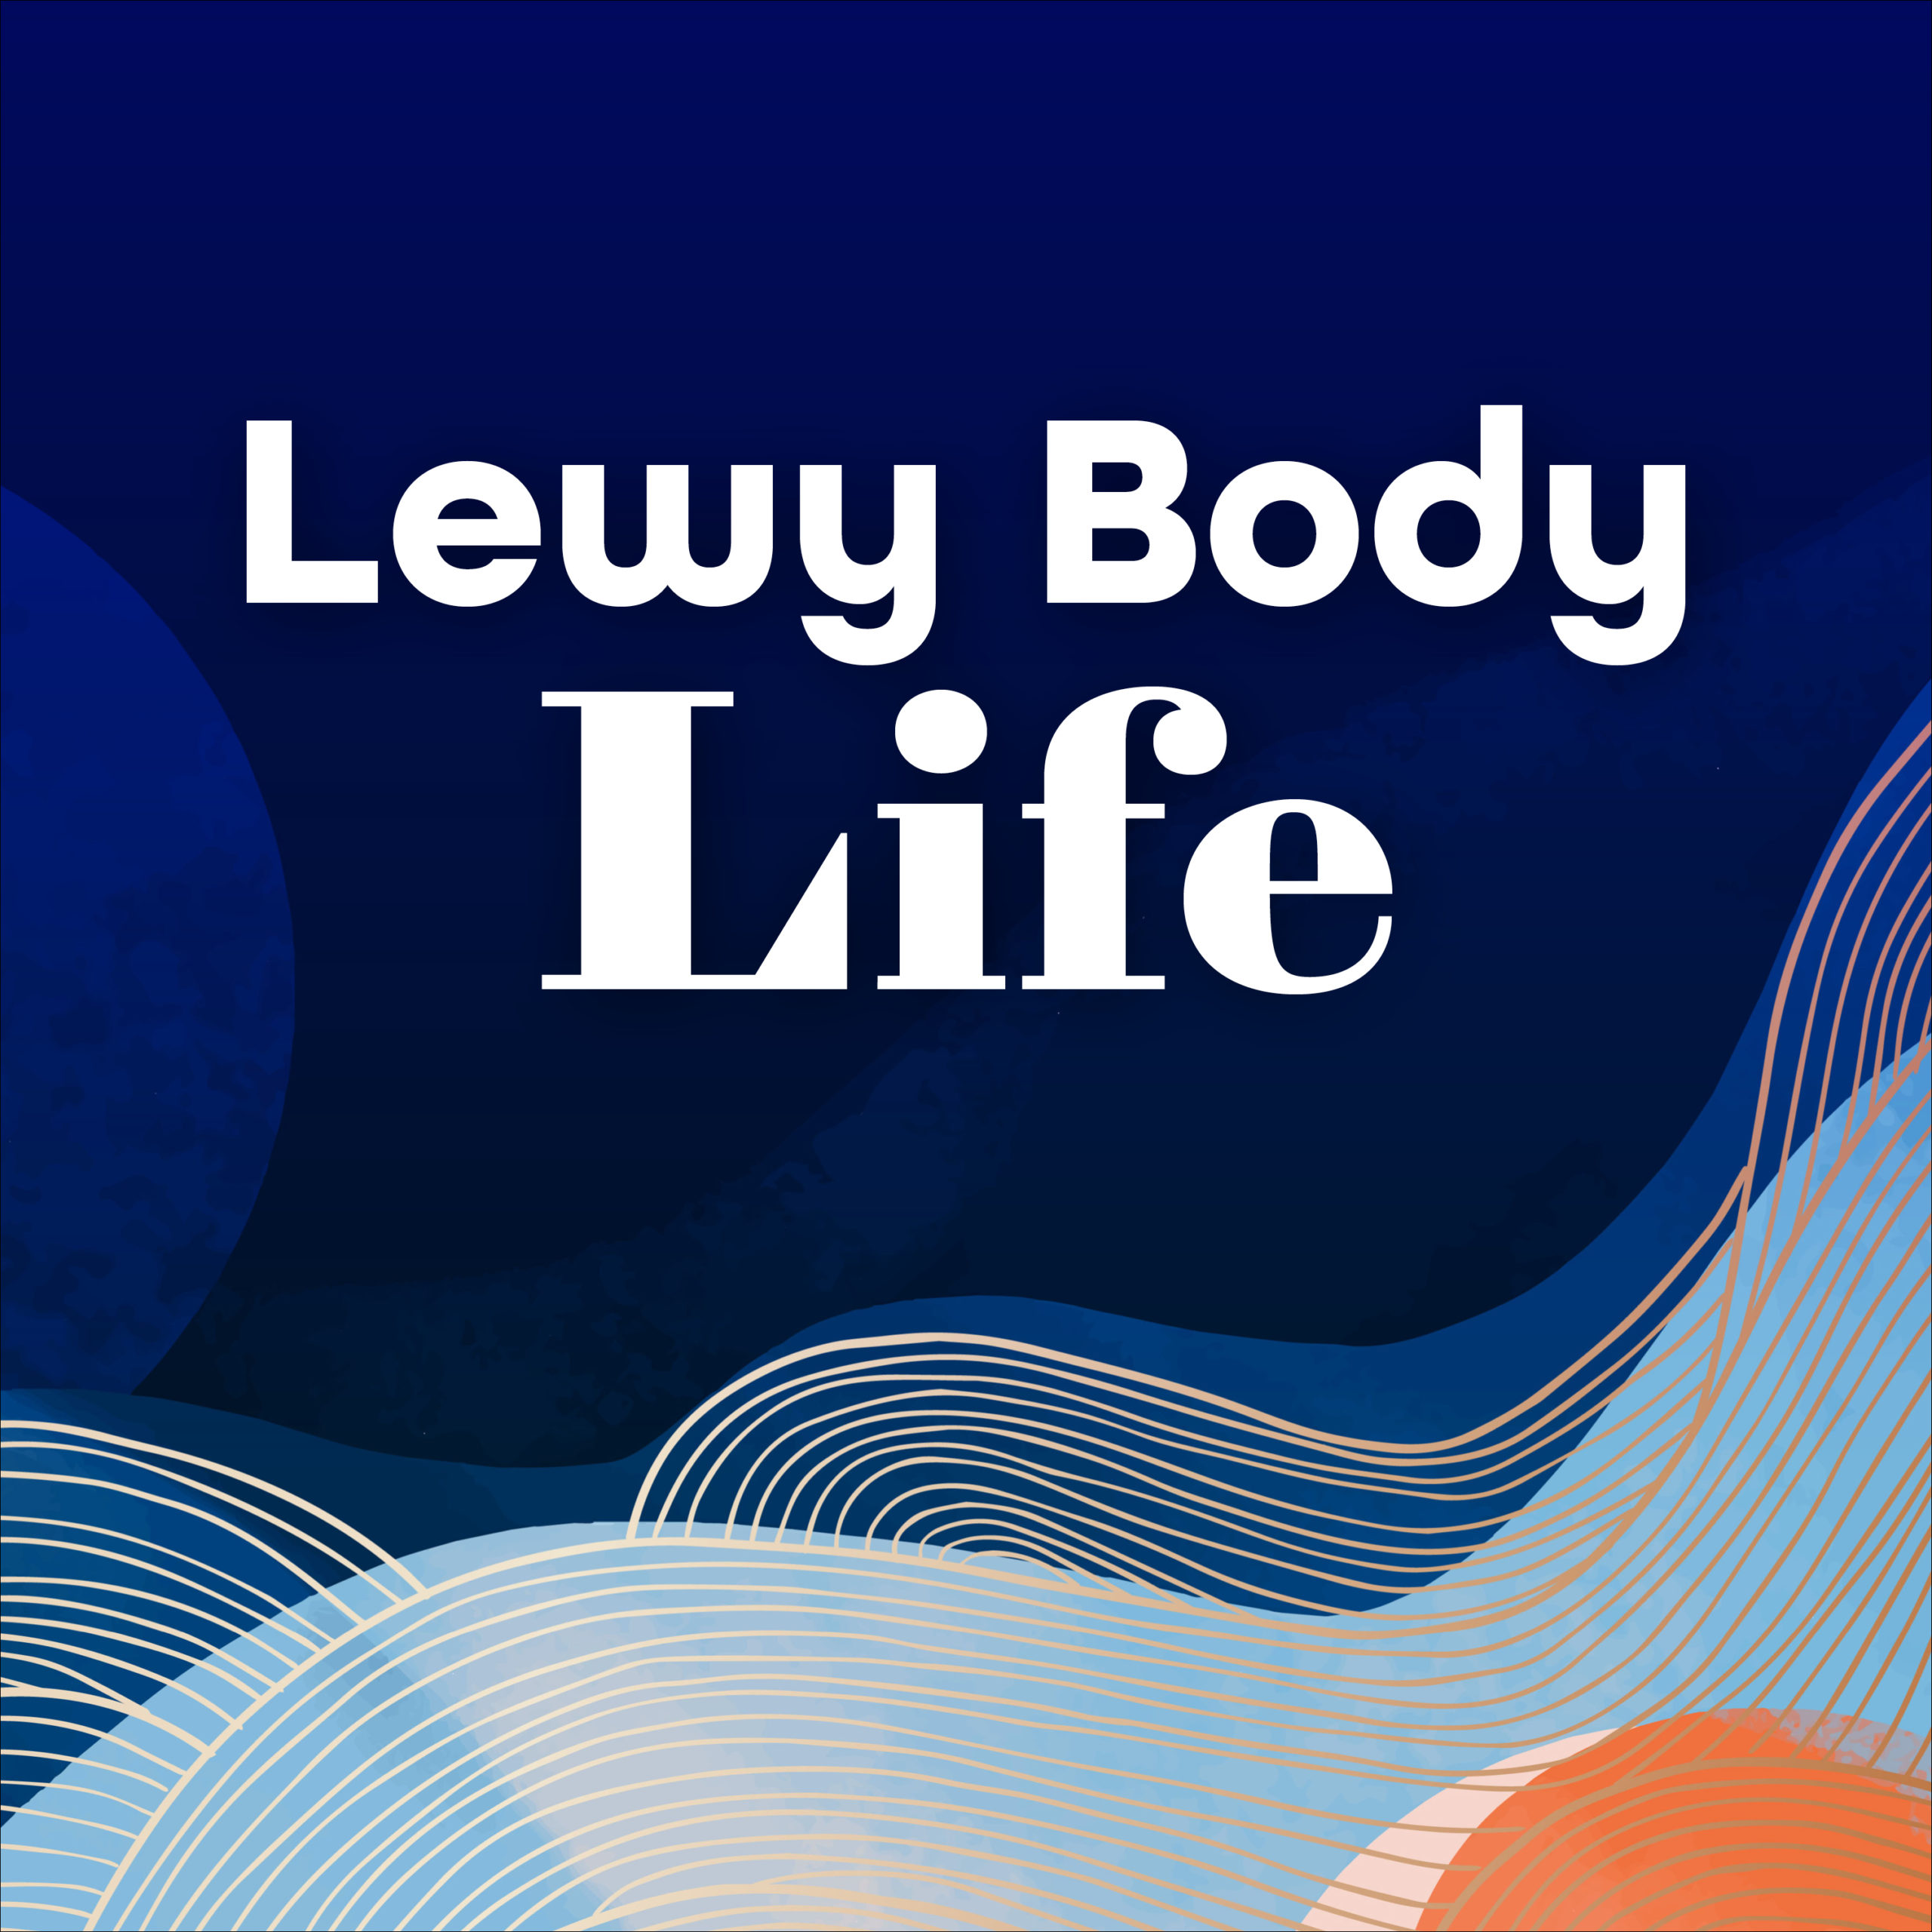 Lewy Body Life